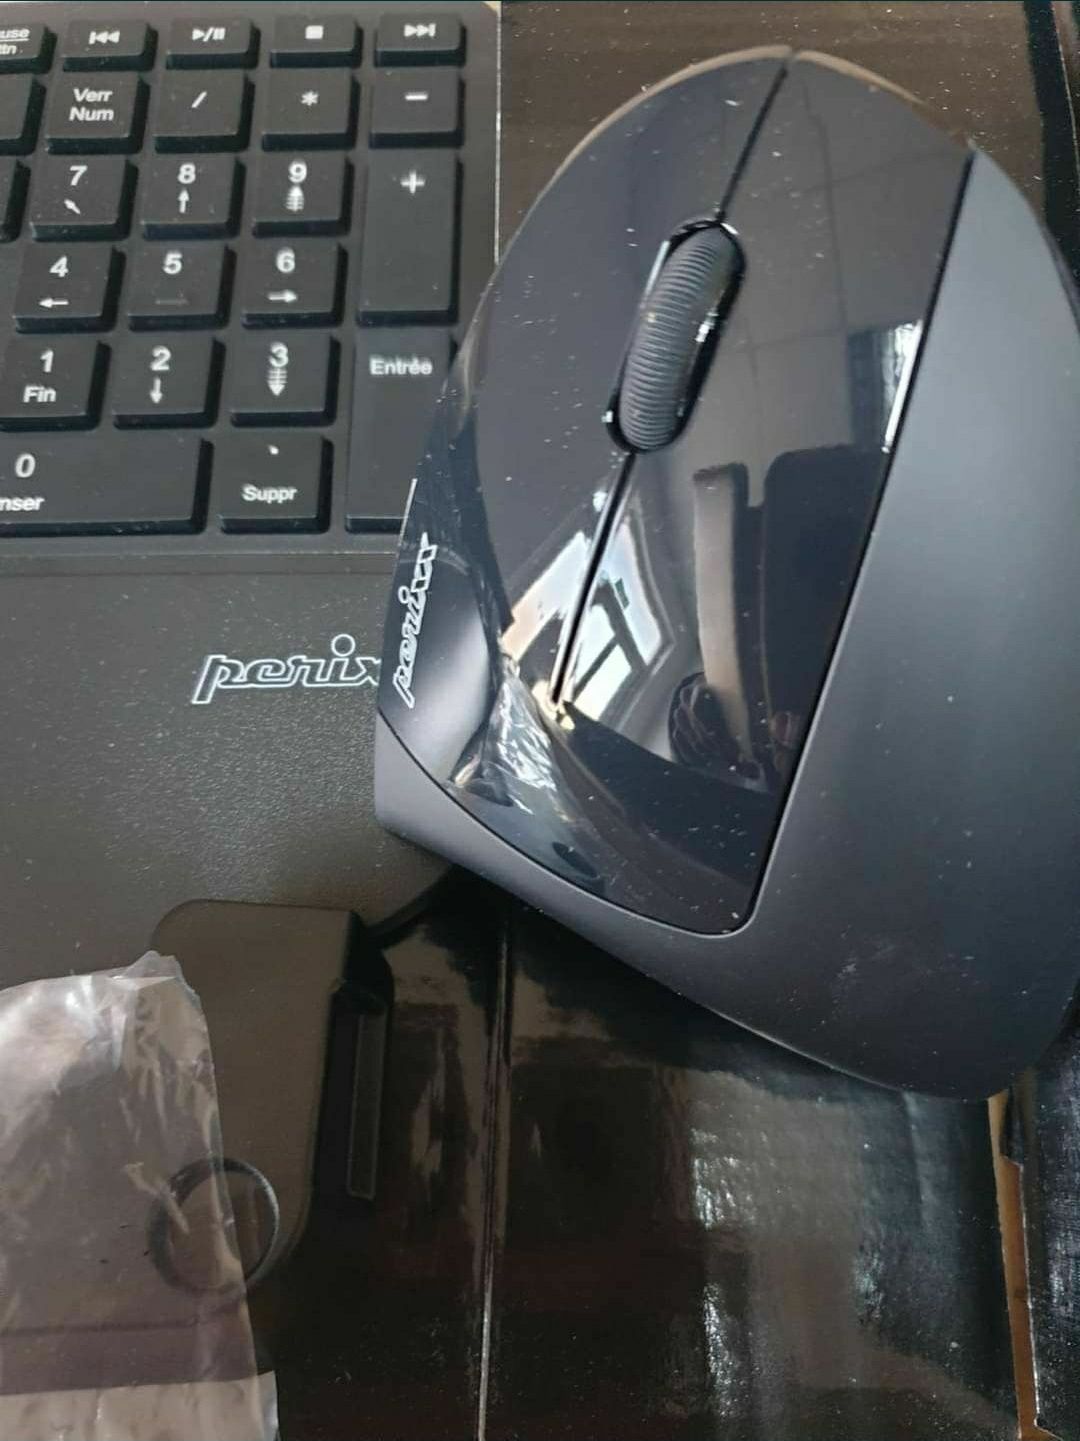 Tastatură si mouse fara fir